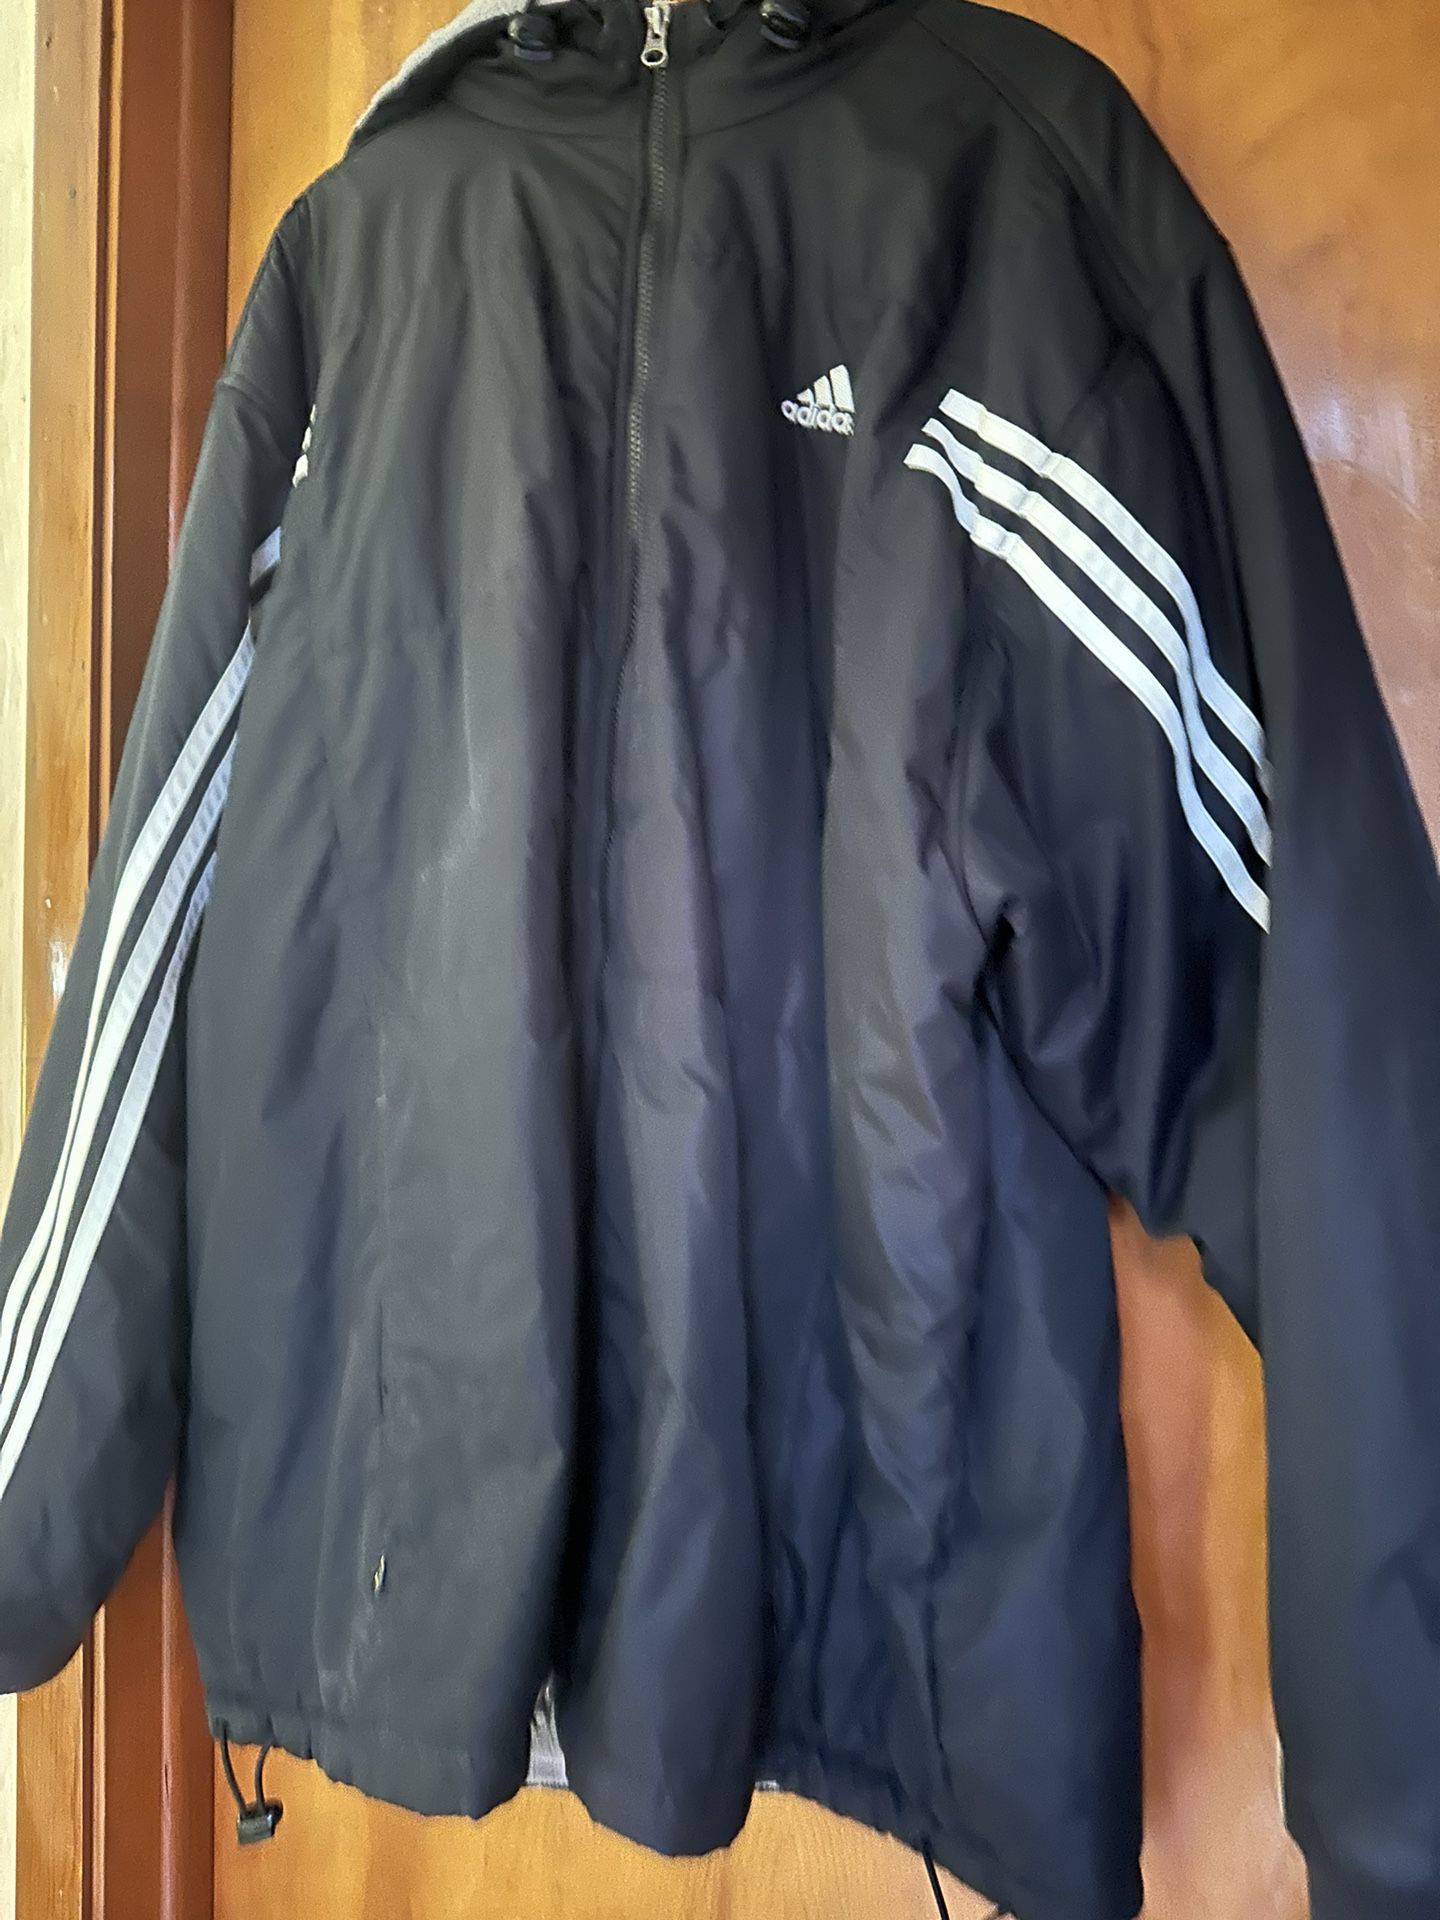 XL Adidas Men’s Jacket 